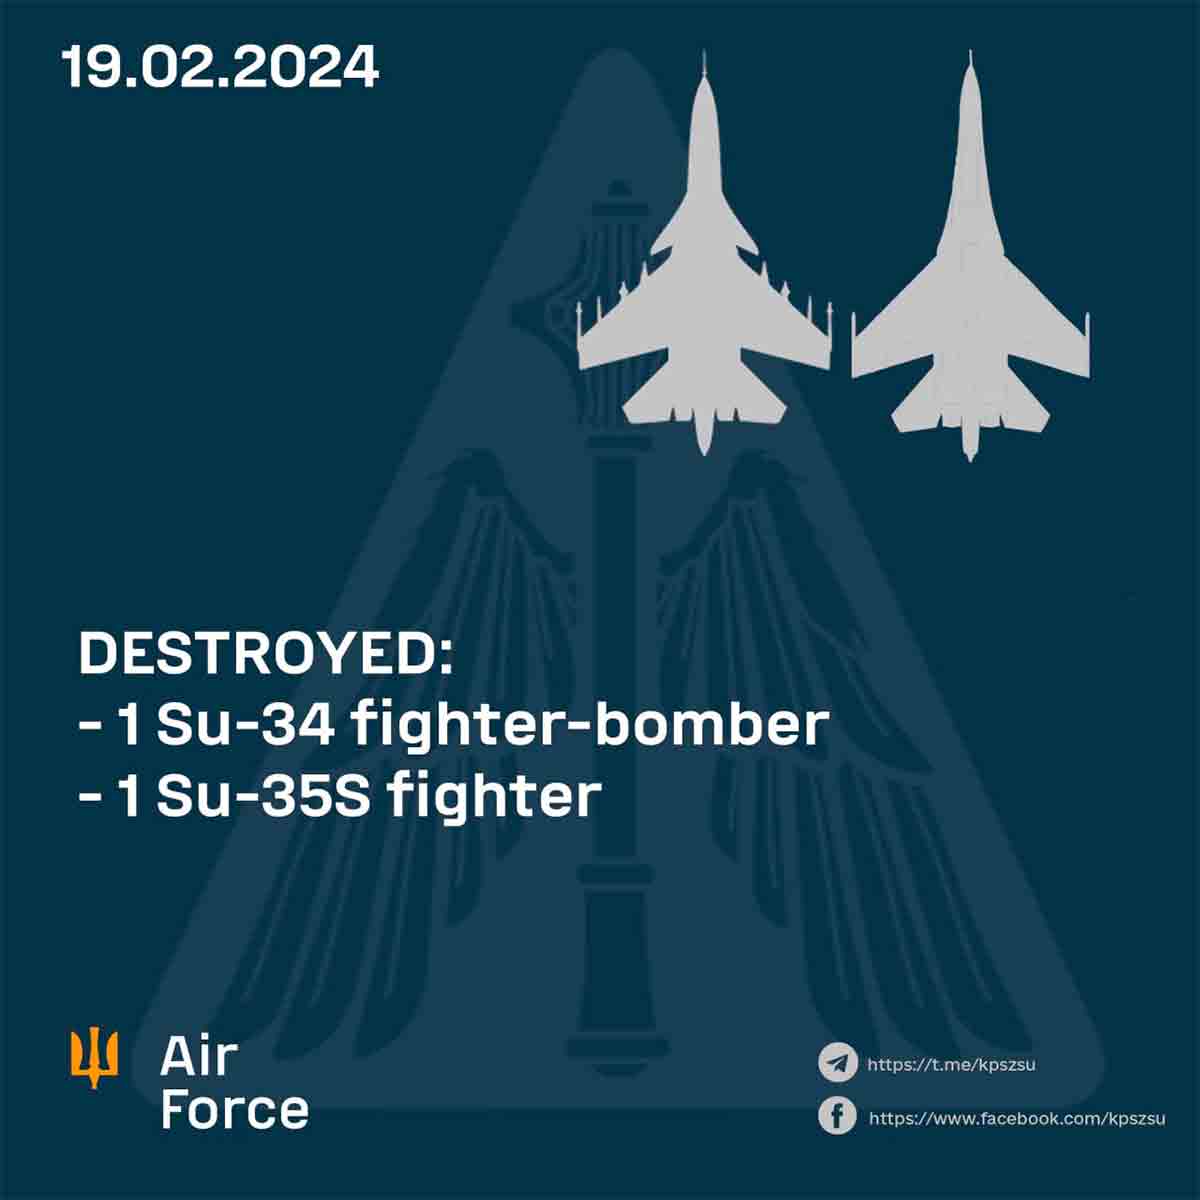 la forza aerea ucraina annuncia il abbattimento di altri 2 caccia russi, per un totale di 6 aeromobili in tre giorni